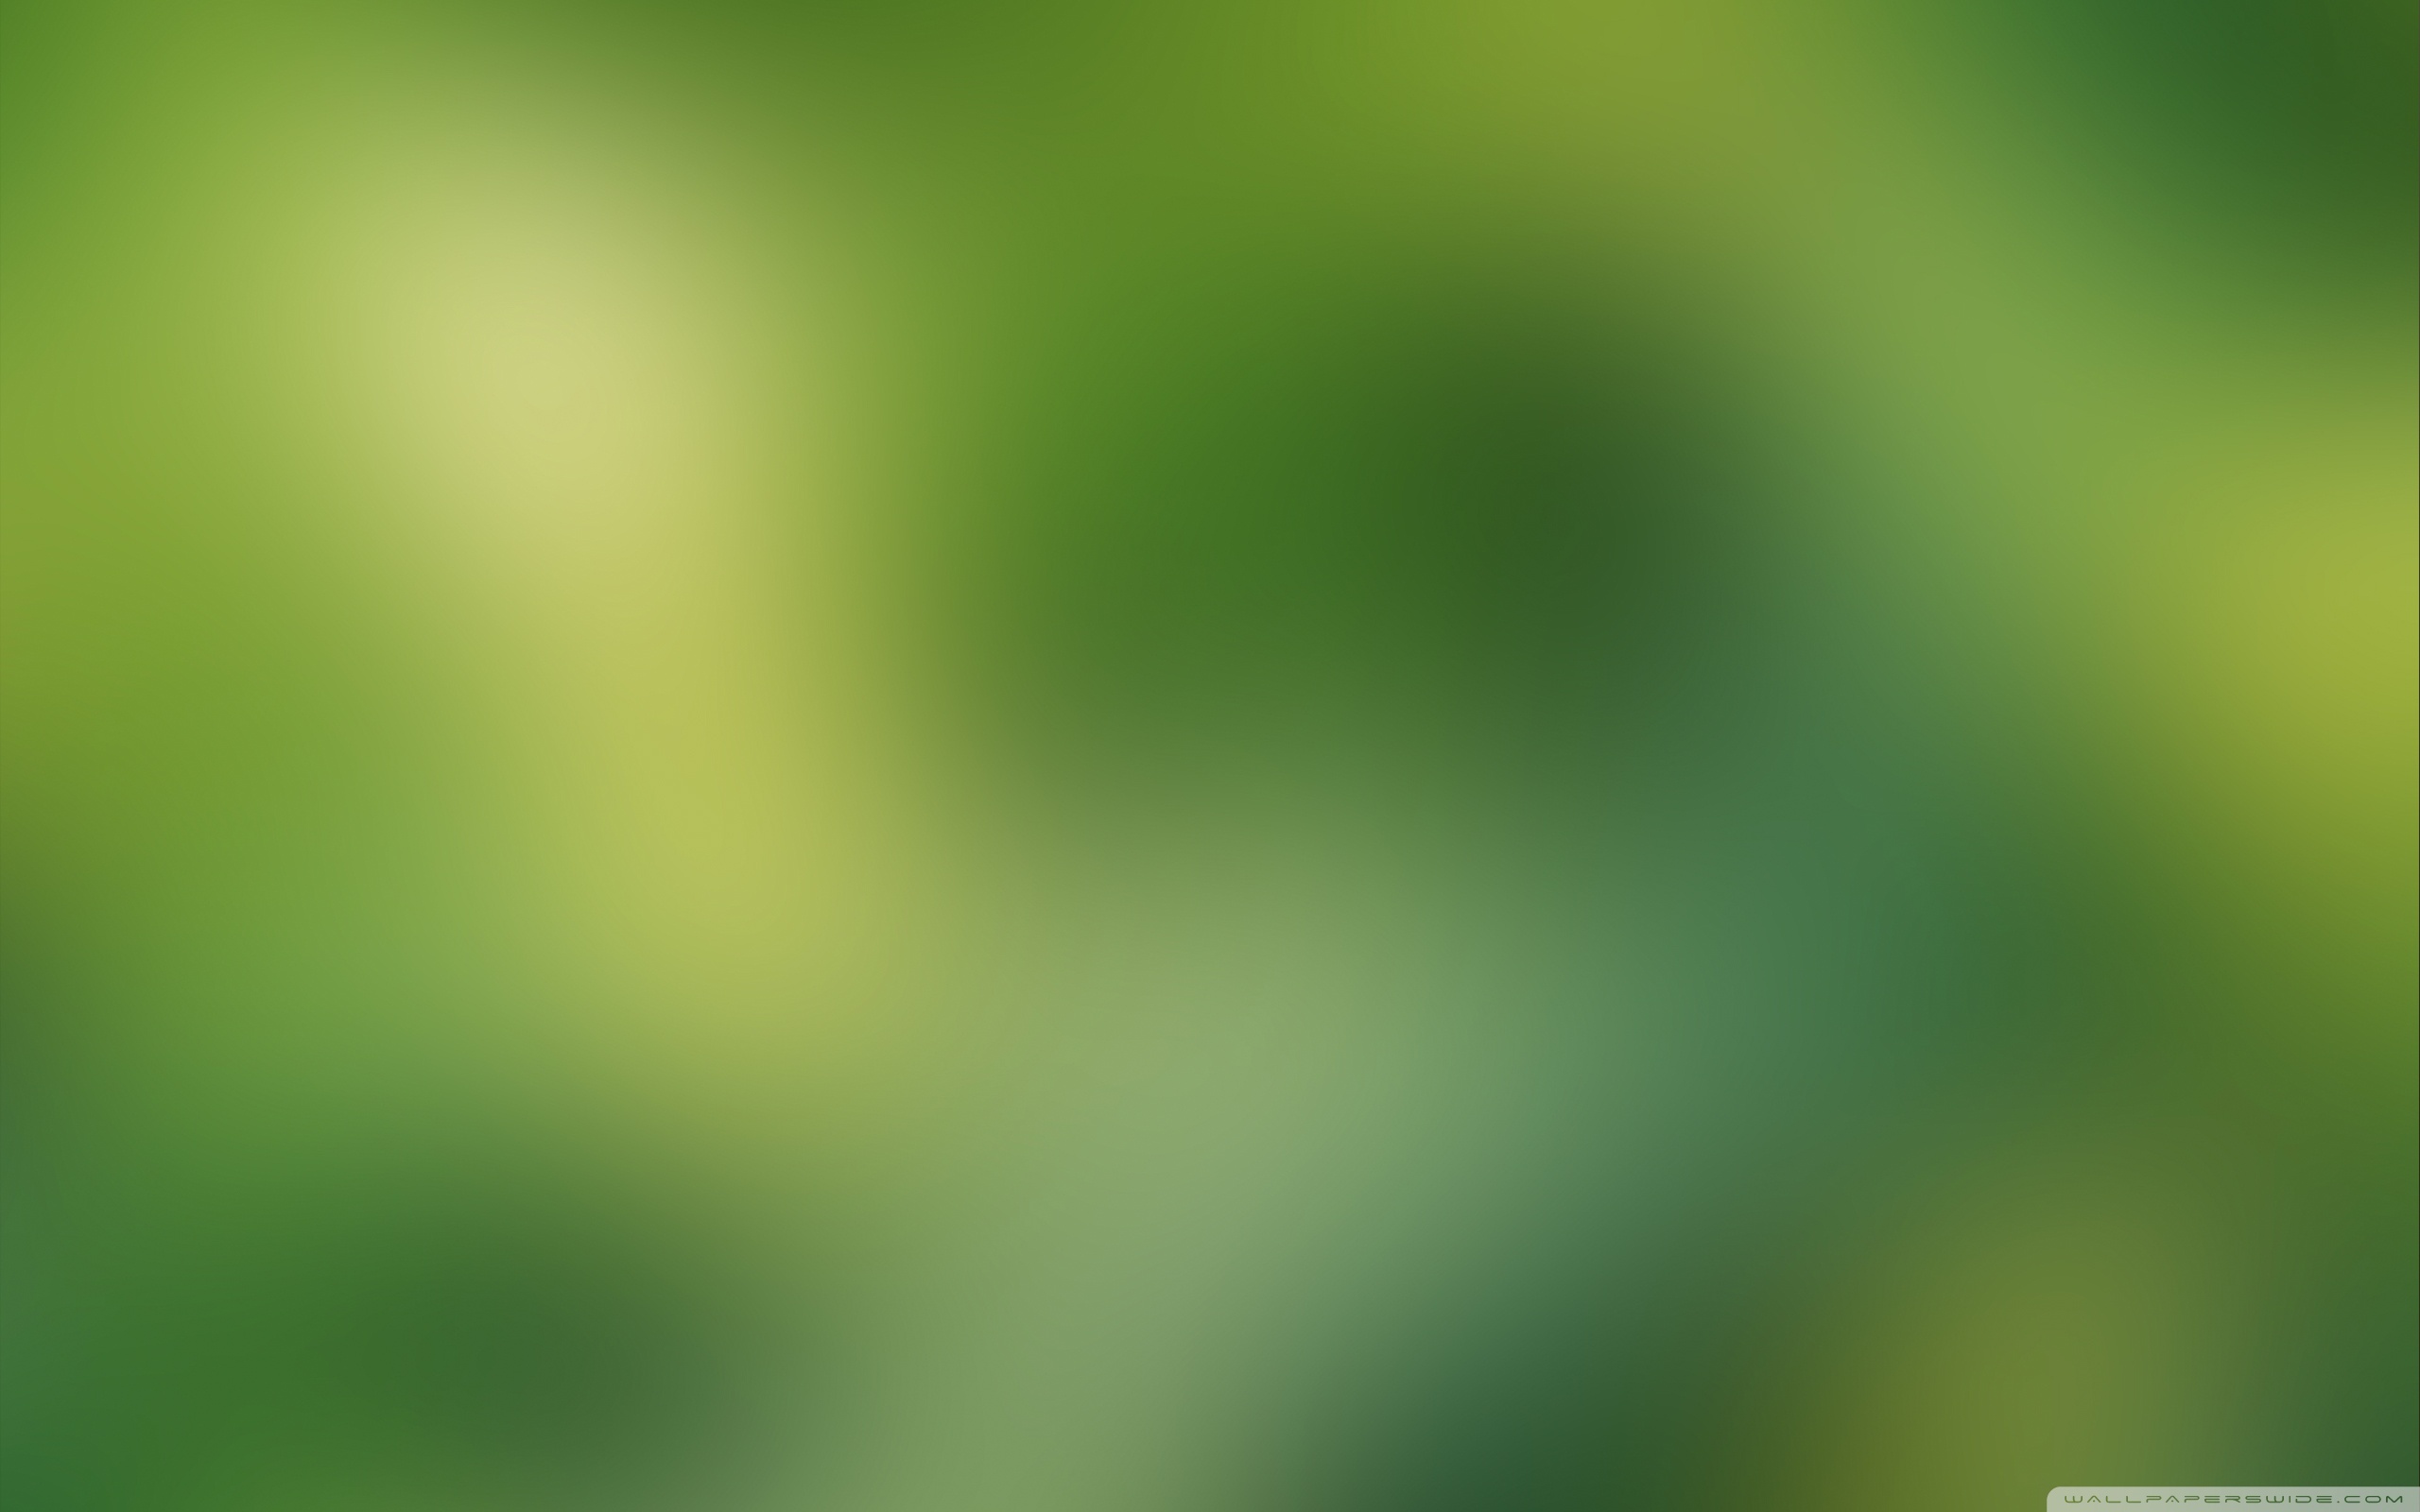 Green Blurry Background 4K HD Desktop Wallpaper For 4K Ultra HD